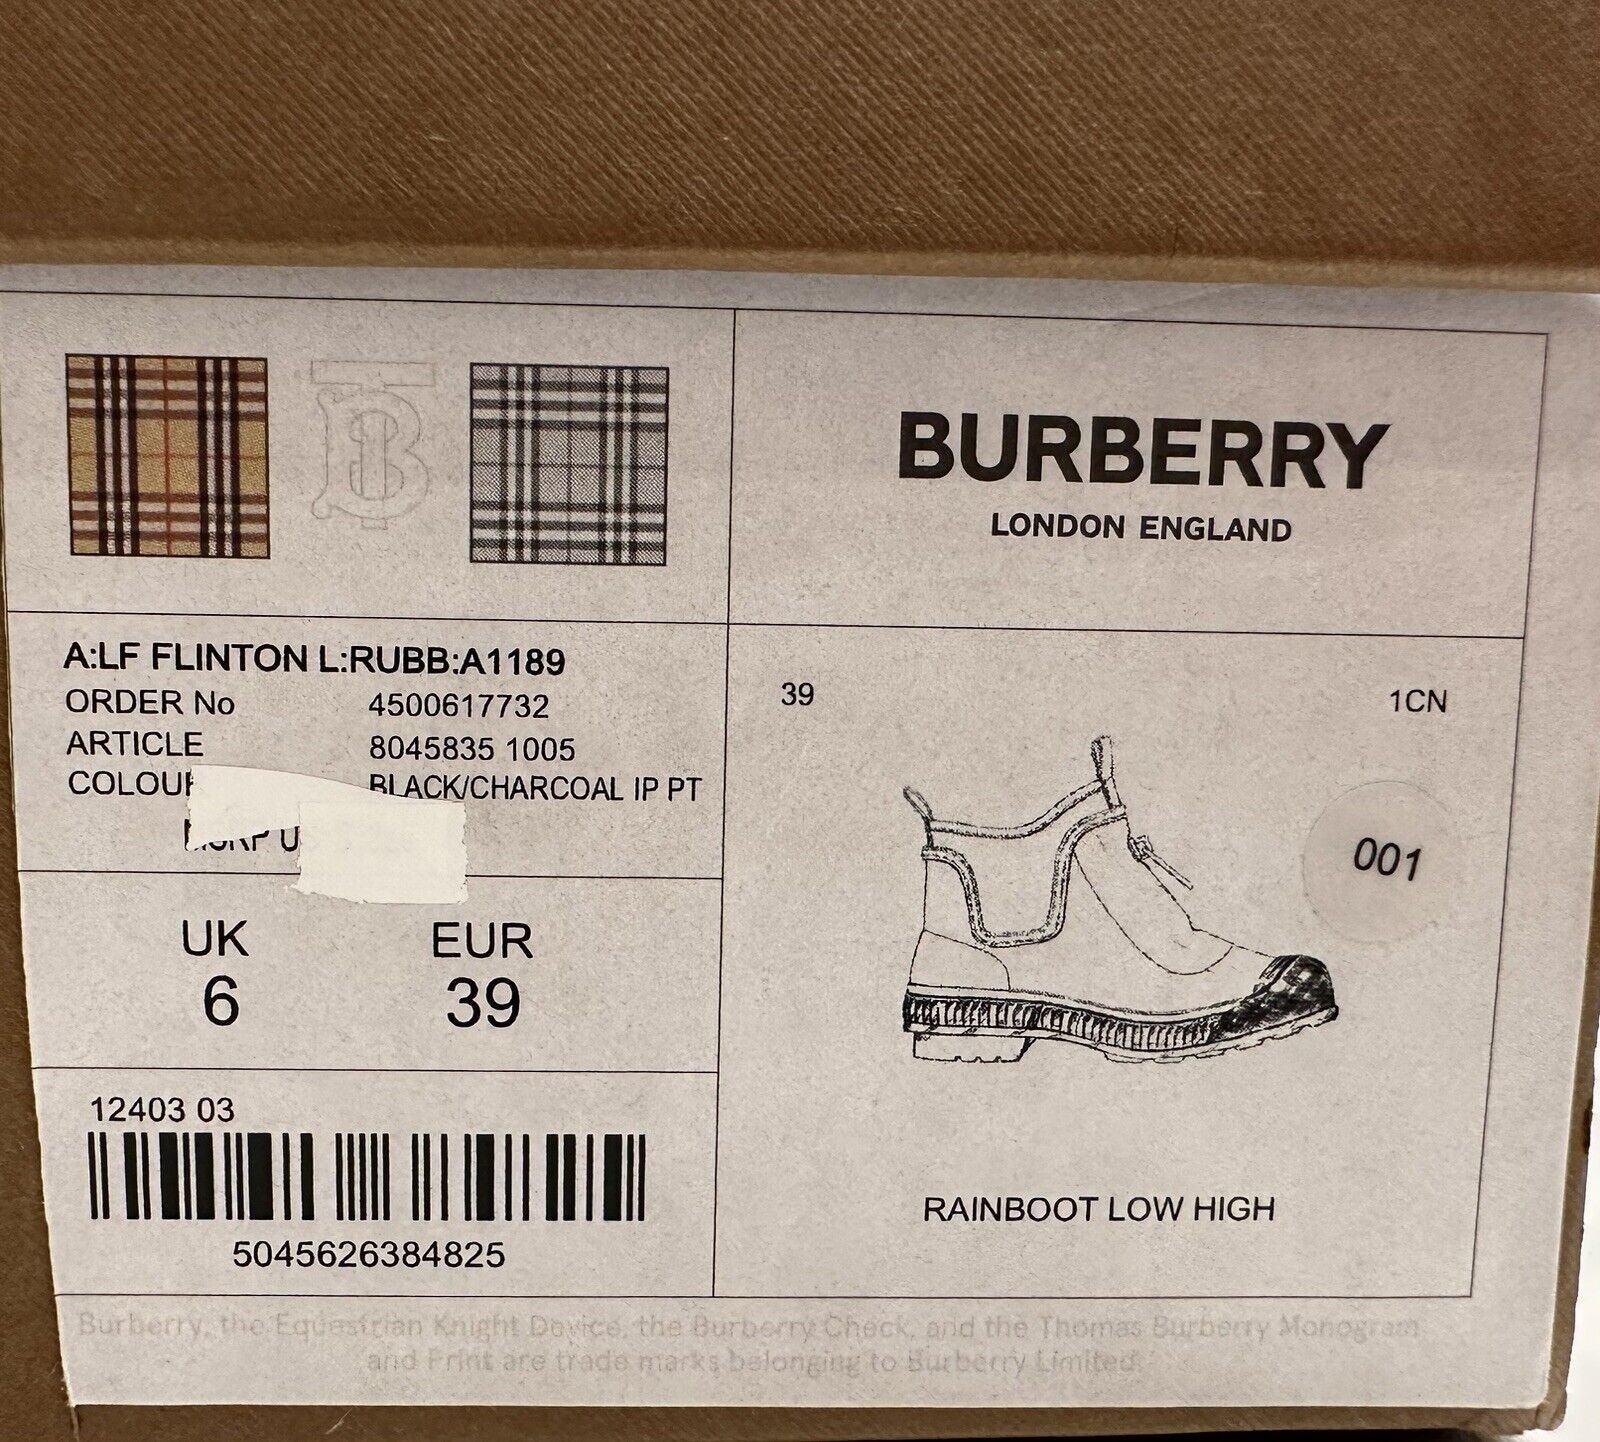 NIB Burberry Rubber Damen-Stiefeletten in Schwarz/Kohle, 9 US (39 Euro) 8045835 